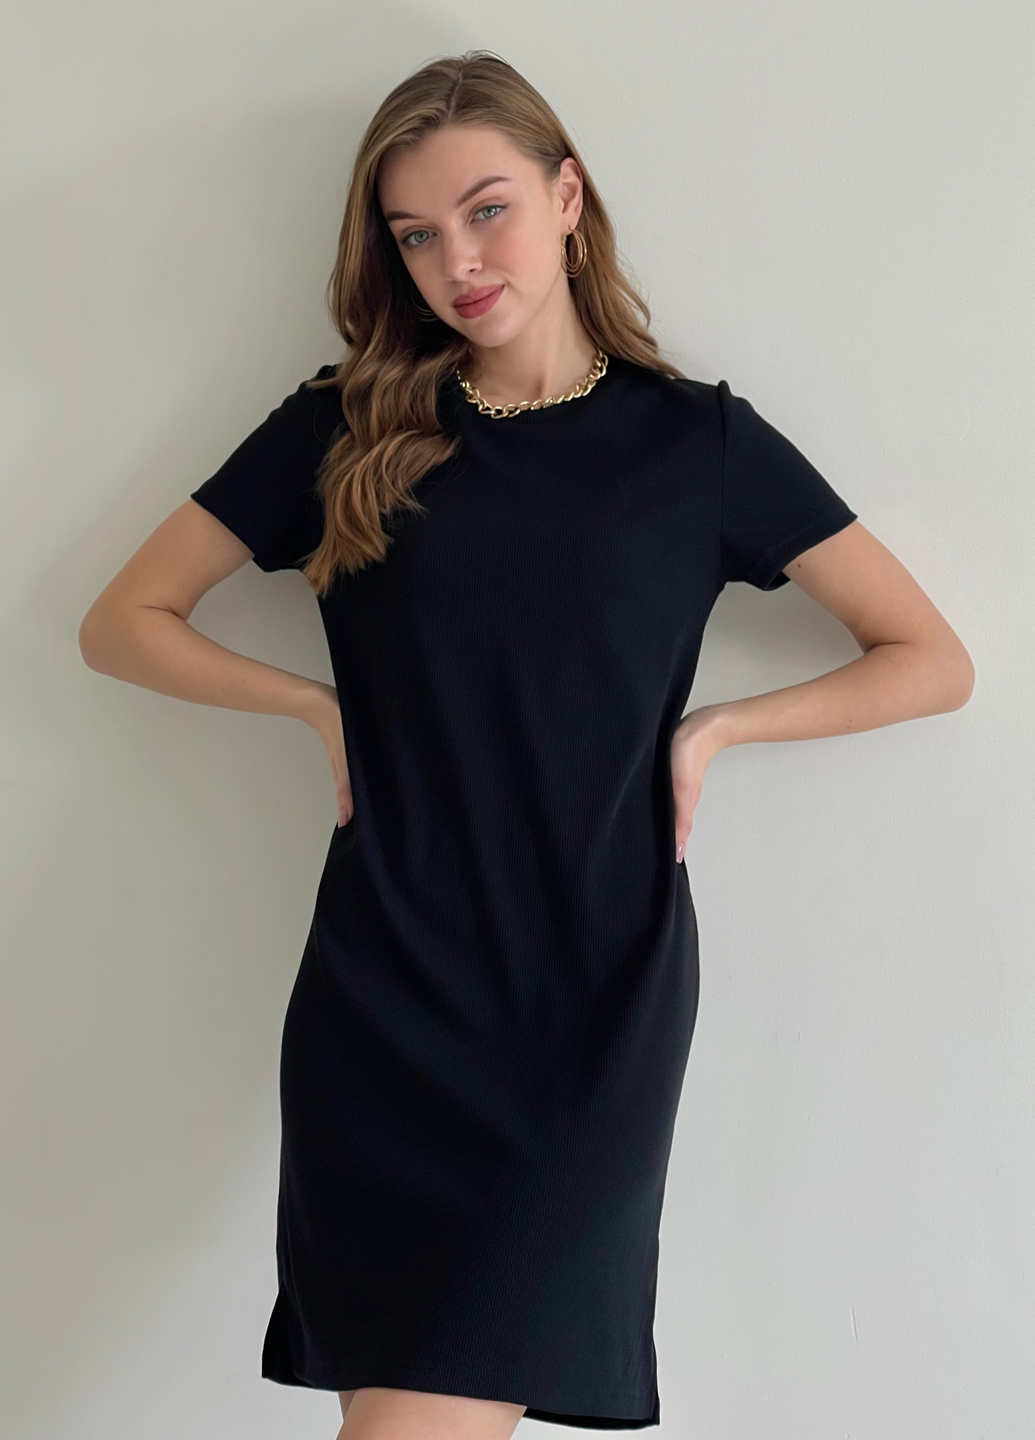 Купить Платье-футболка до колена в рубчик черное Merlini Милан 700000141 размер 42-44 (S-M) в интернет-магазине